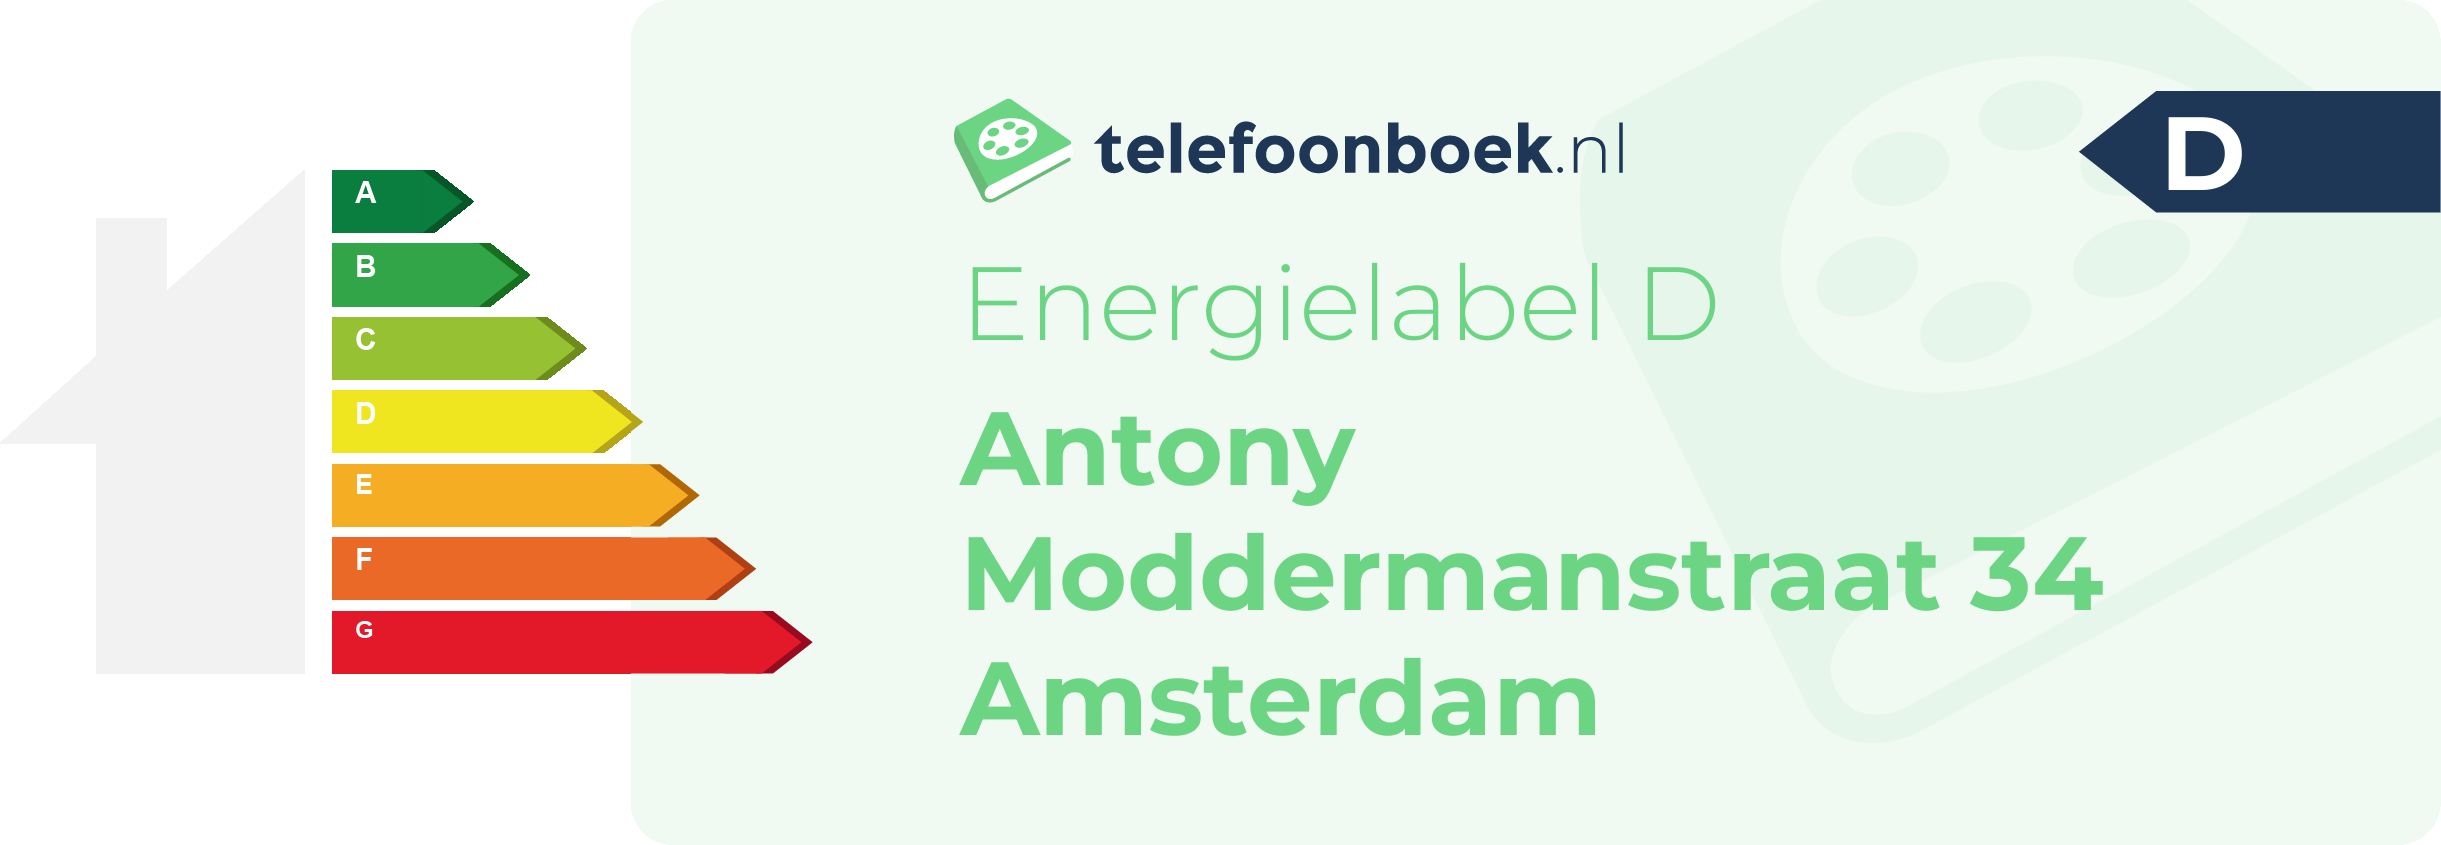 Energielabel Antony Moddermanstraat 34 Amsterdam